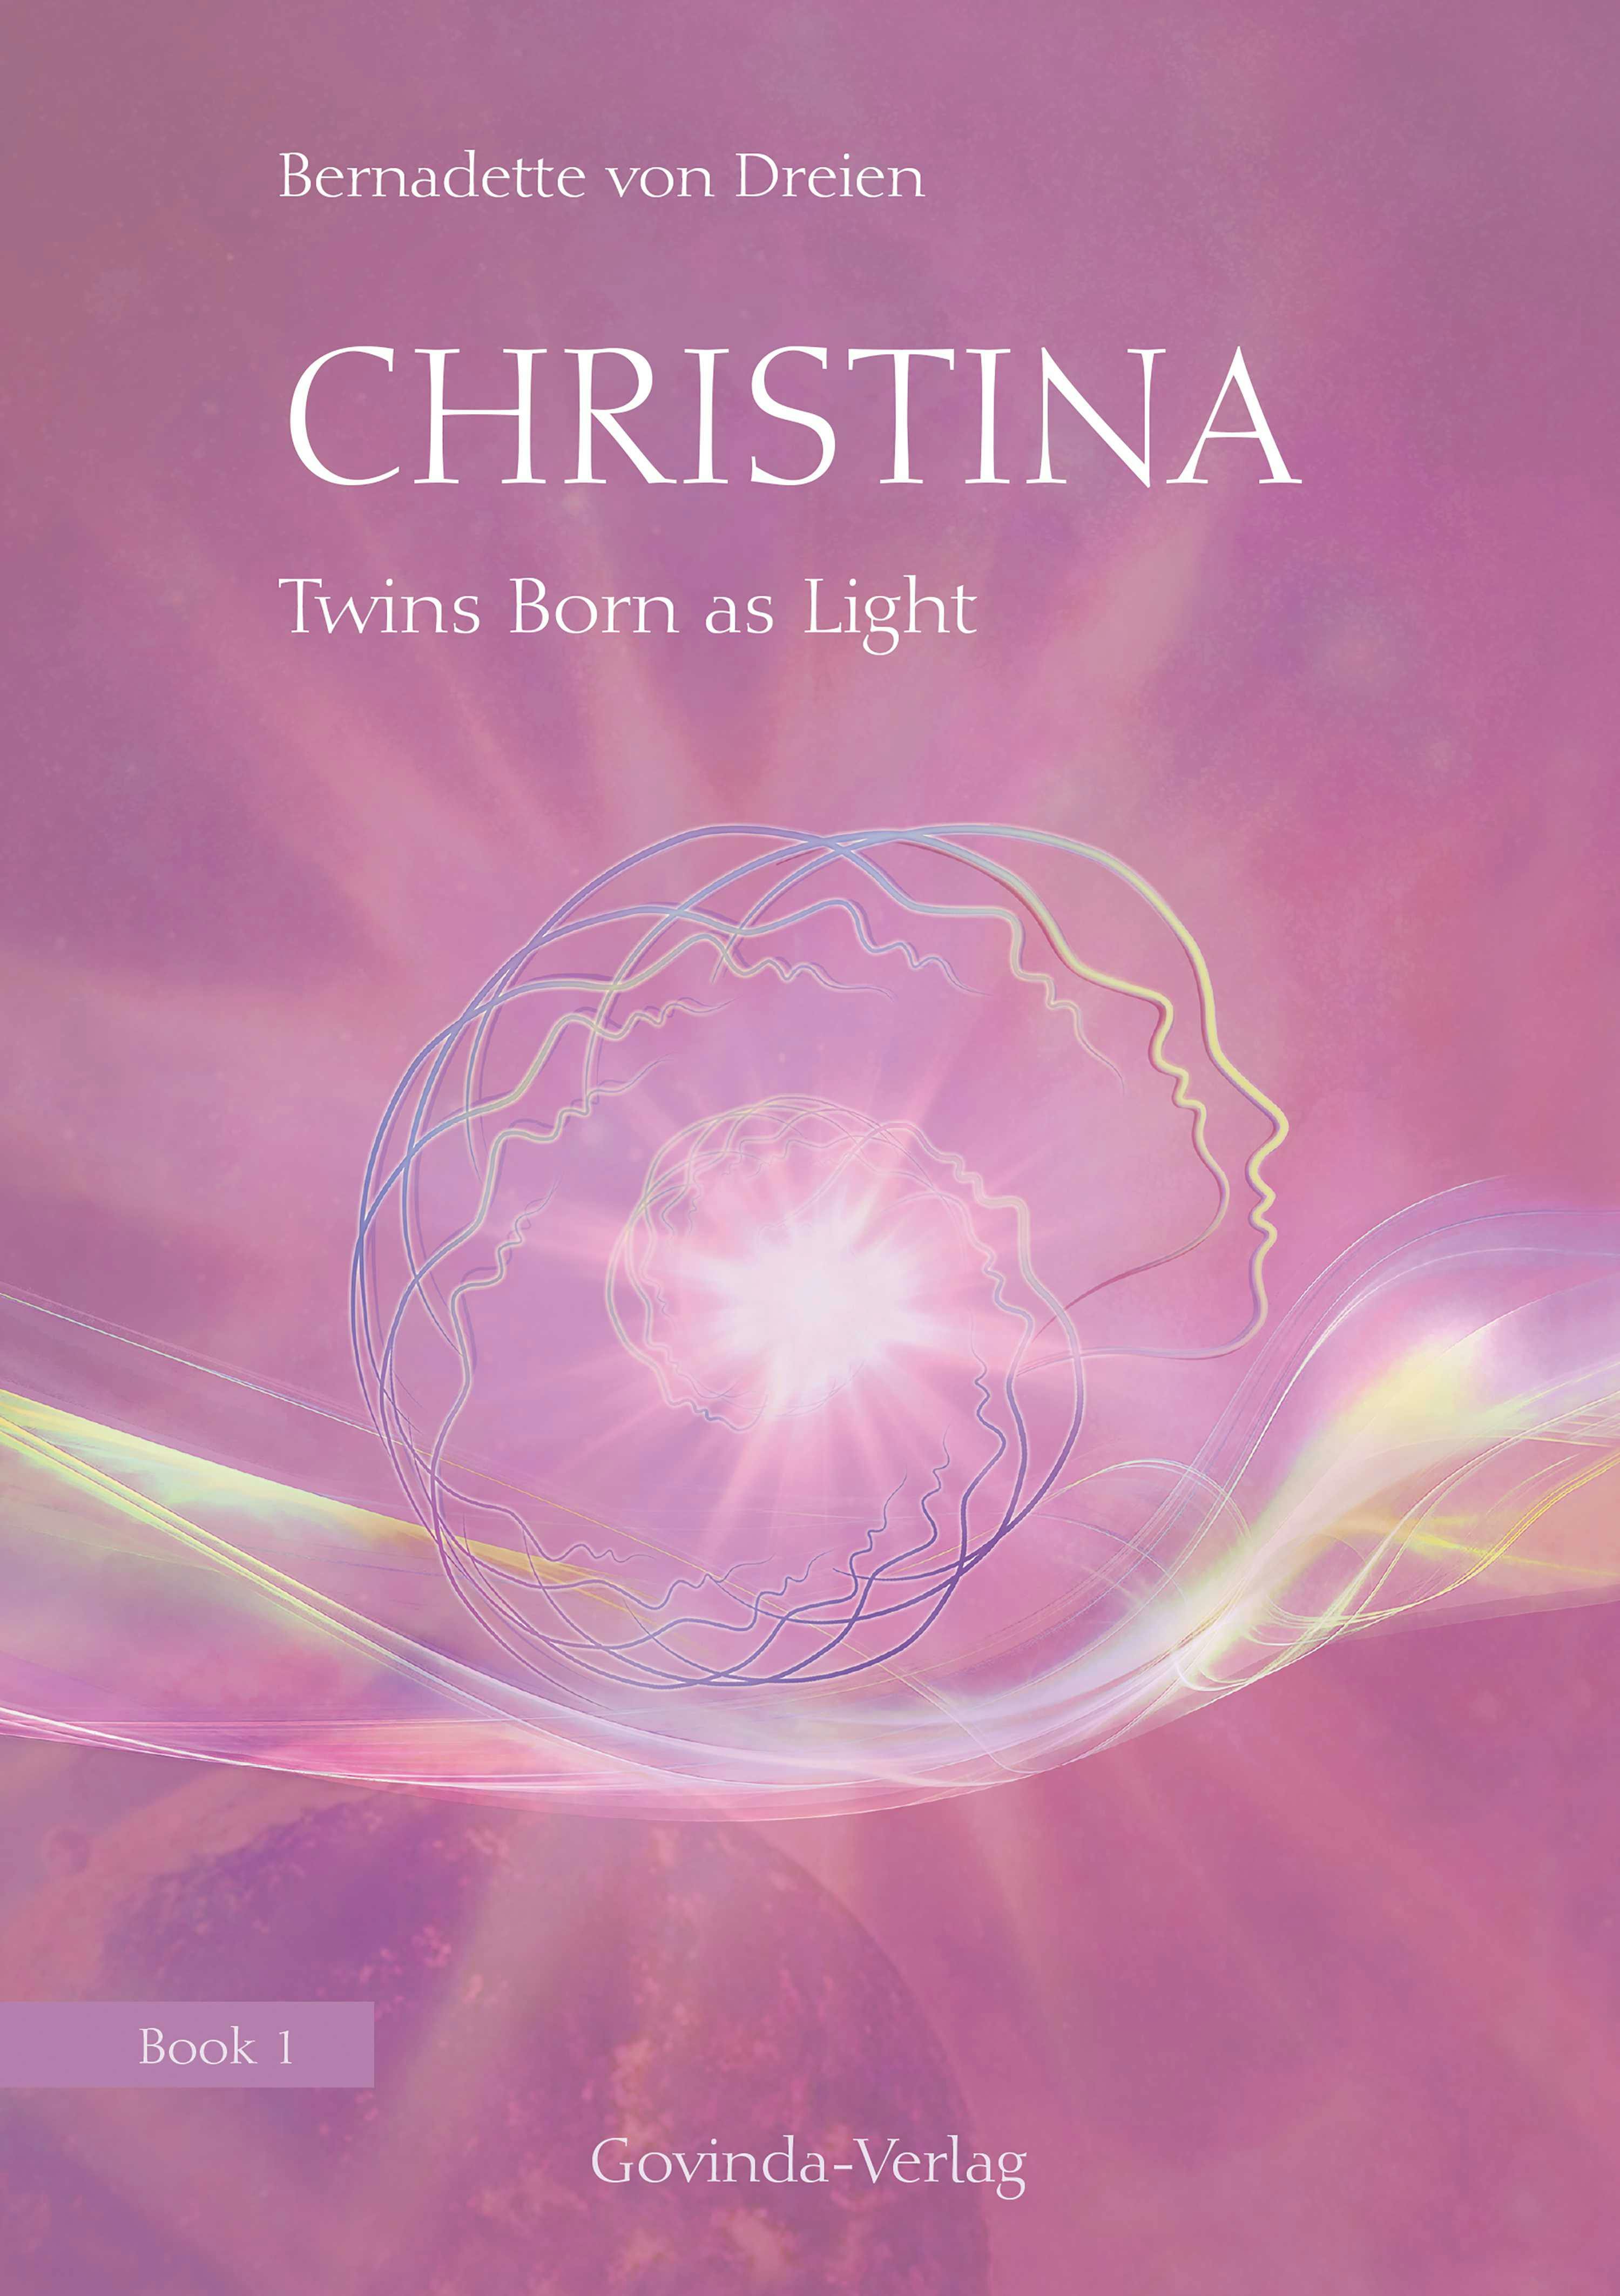 Christina, Book 1: Twins Born as Light: Book 1 of the "Christina" book series - Bernadette von Dreien